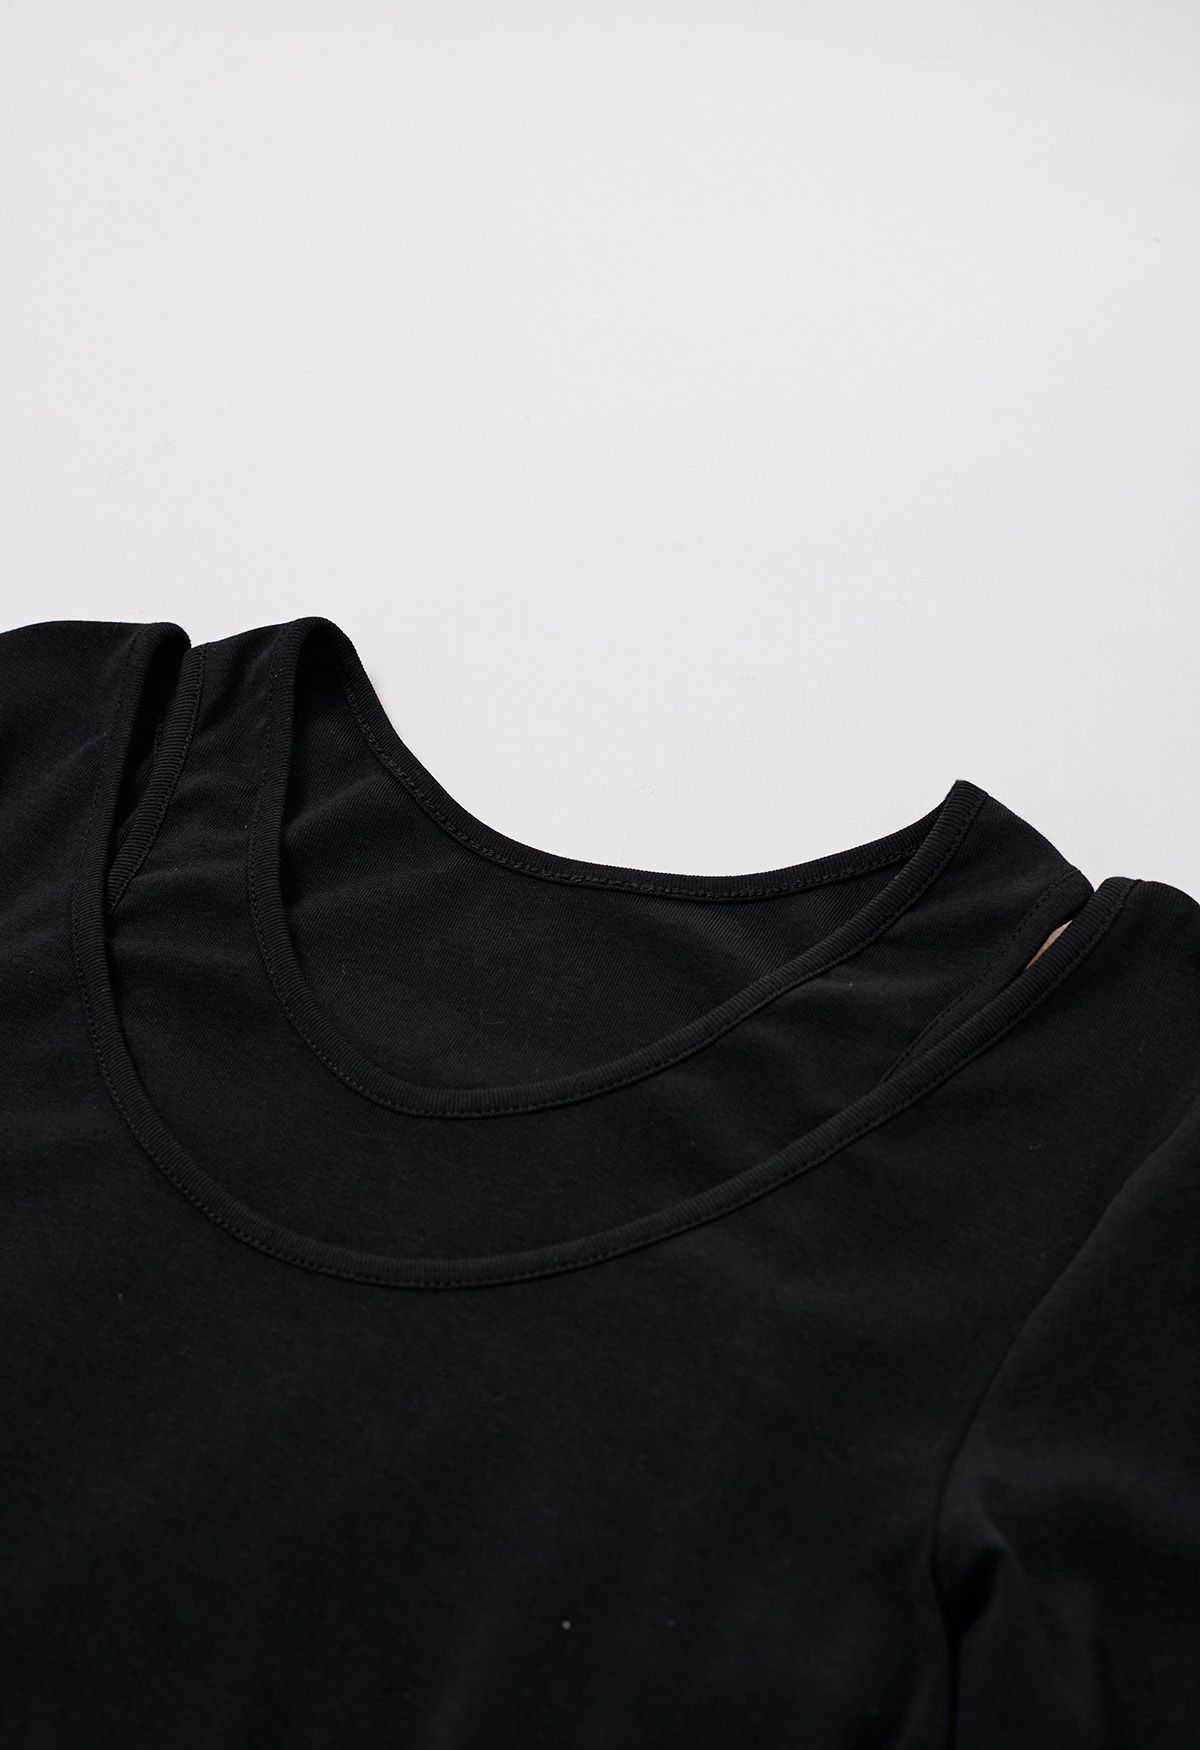 فستان متوسط الطول مقسم من قطعتين باللون الأسود